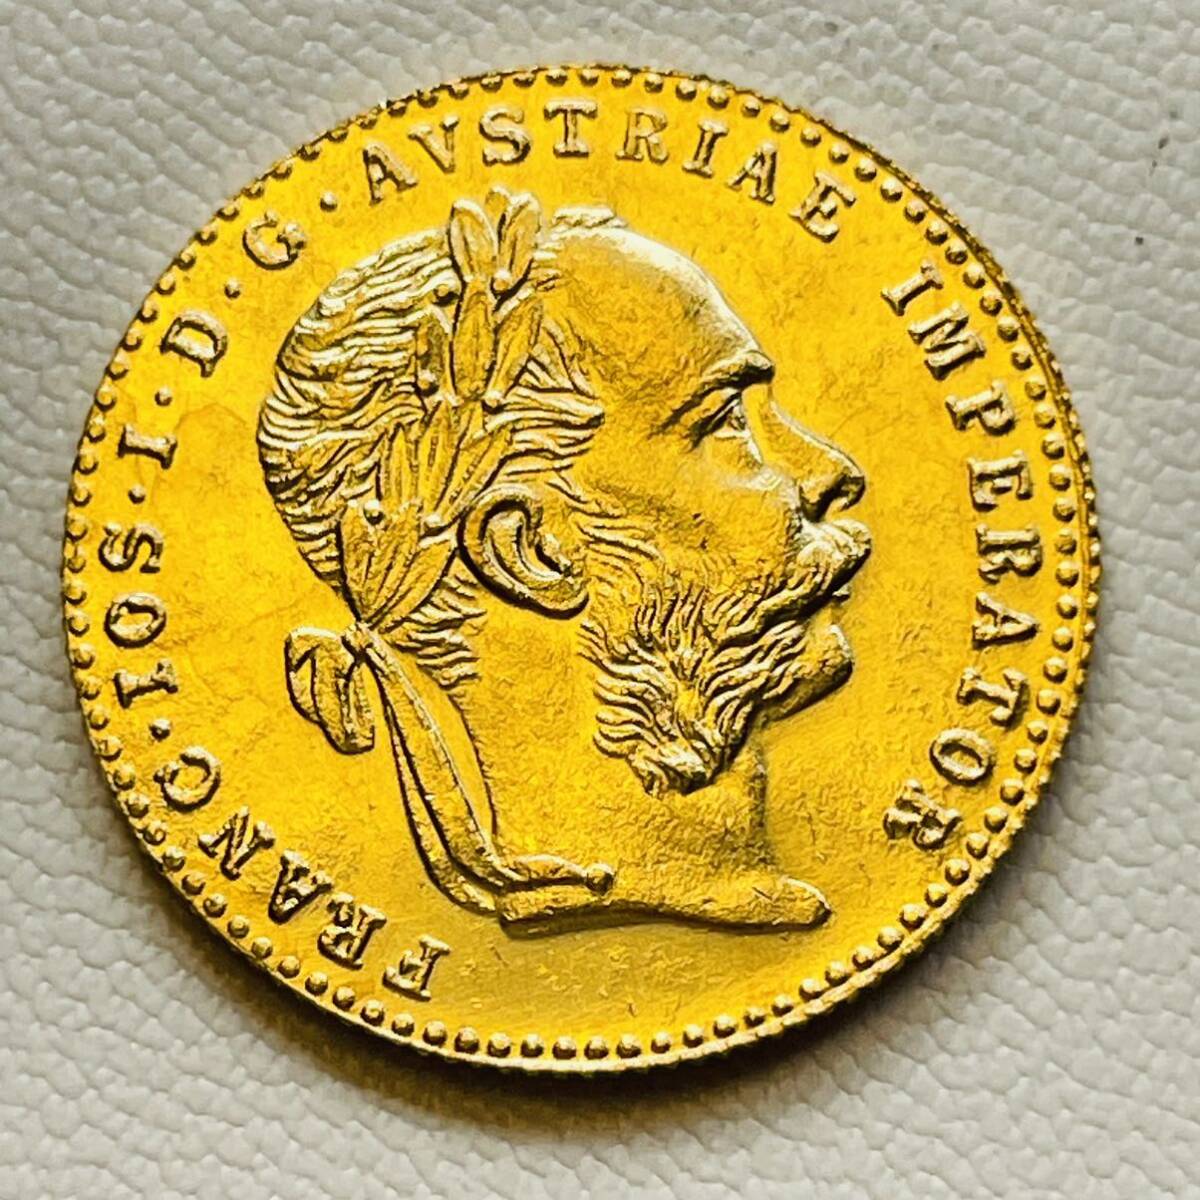 オーストリア帝国 硬貨 古銭 フランツ・ヨーゼフ 1 世 1915年 帝国の鷲 ハプスブルク紋章 国章 コイン 重3.33g_画像2